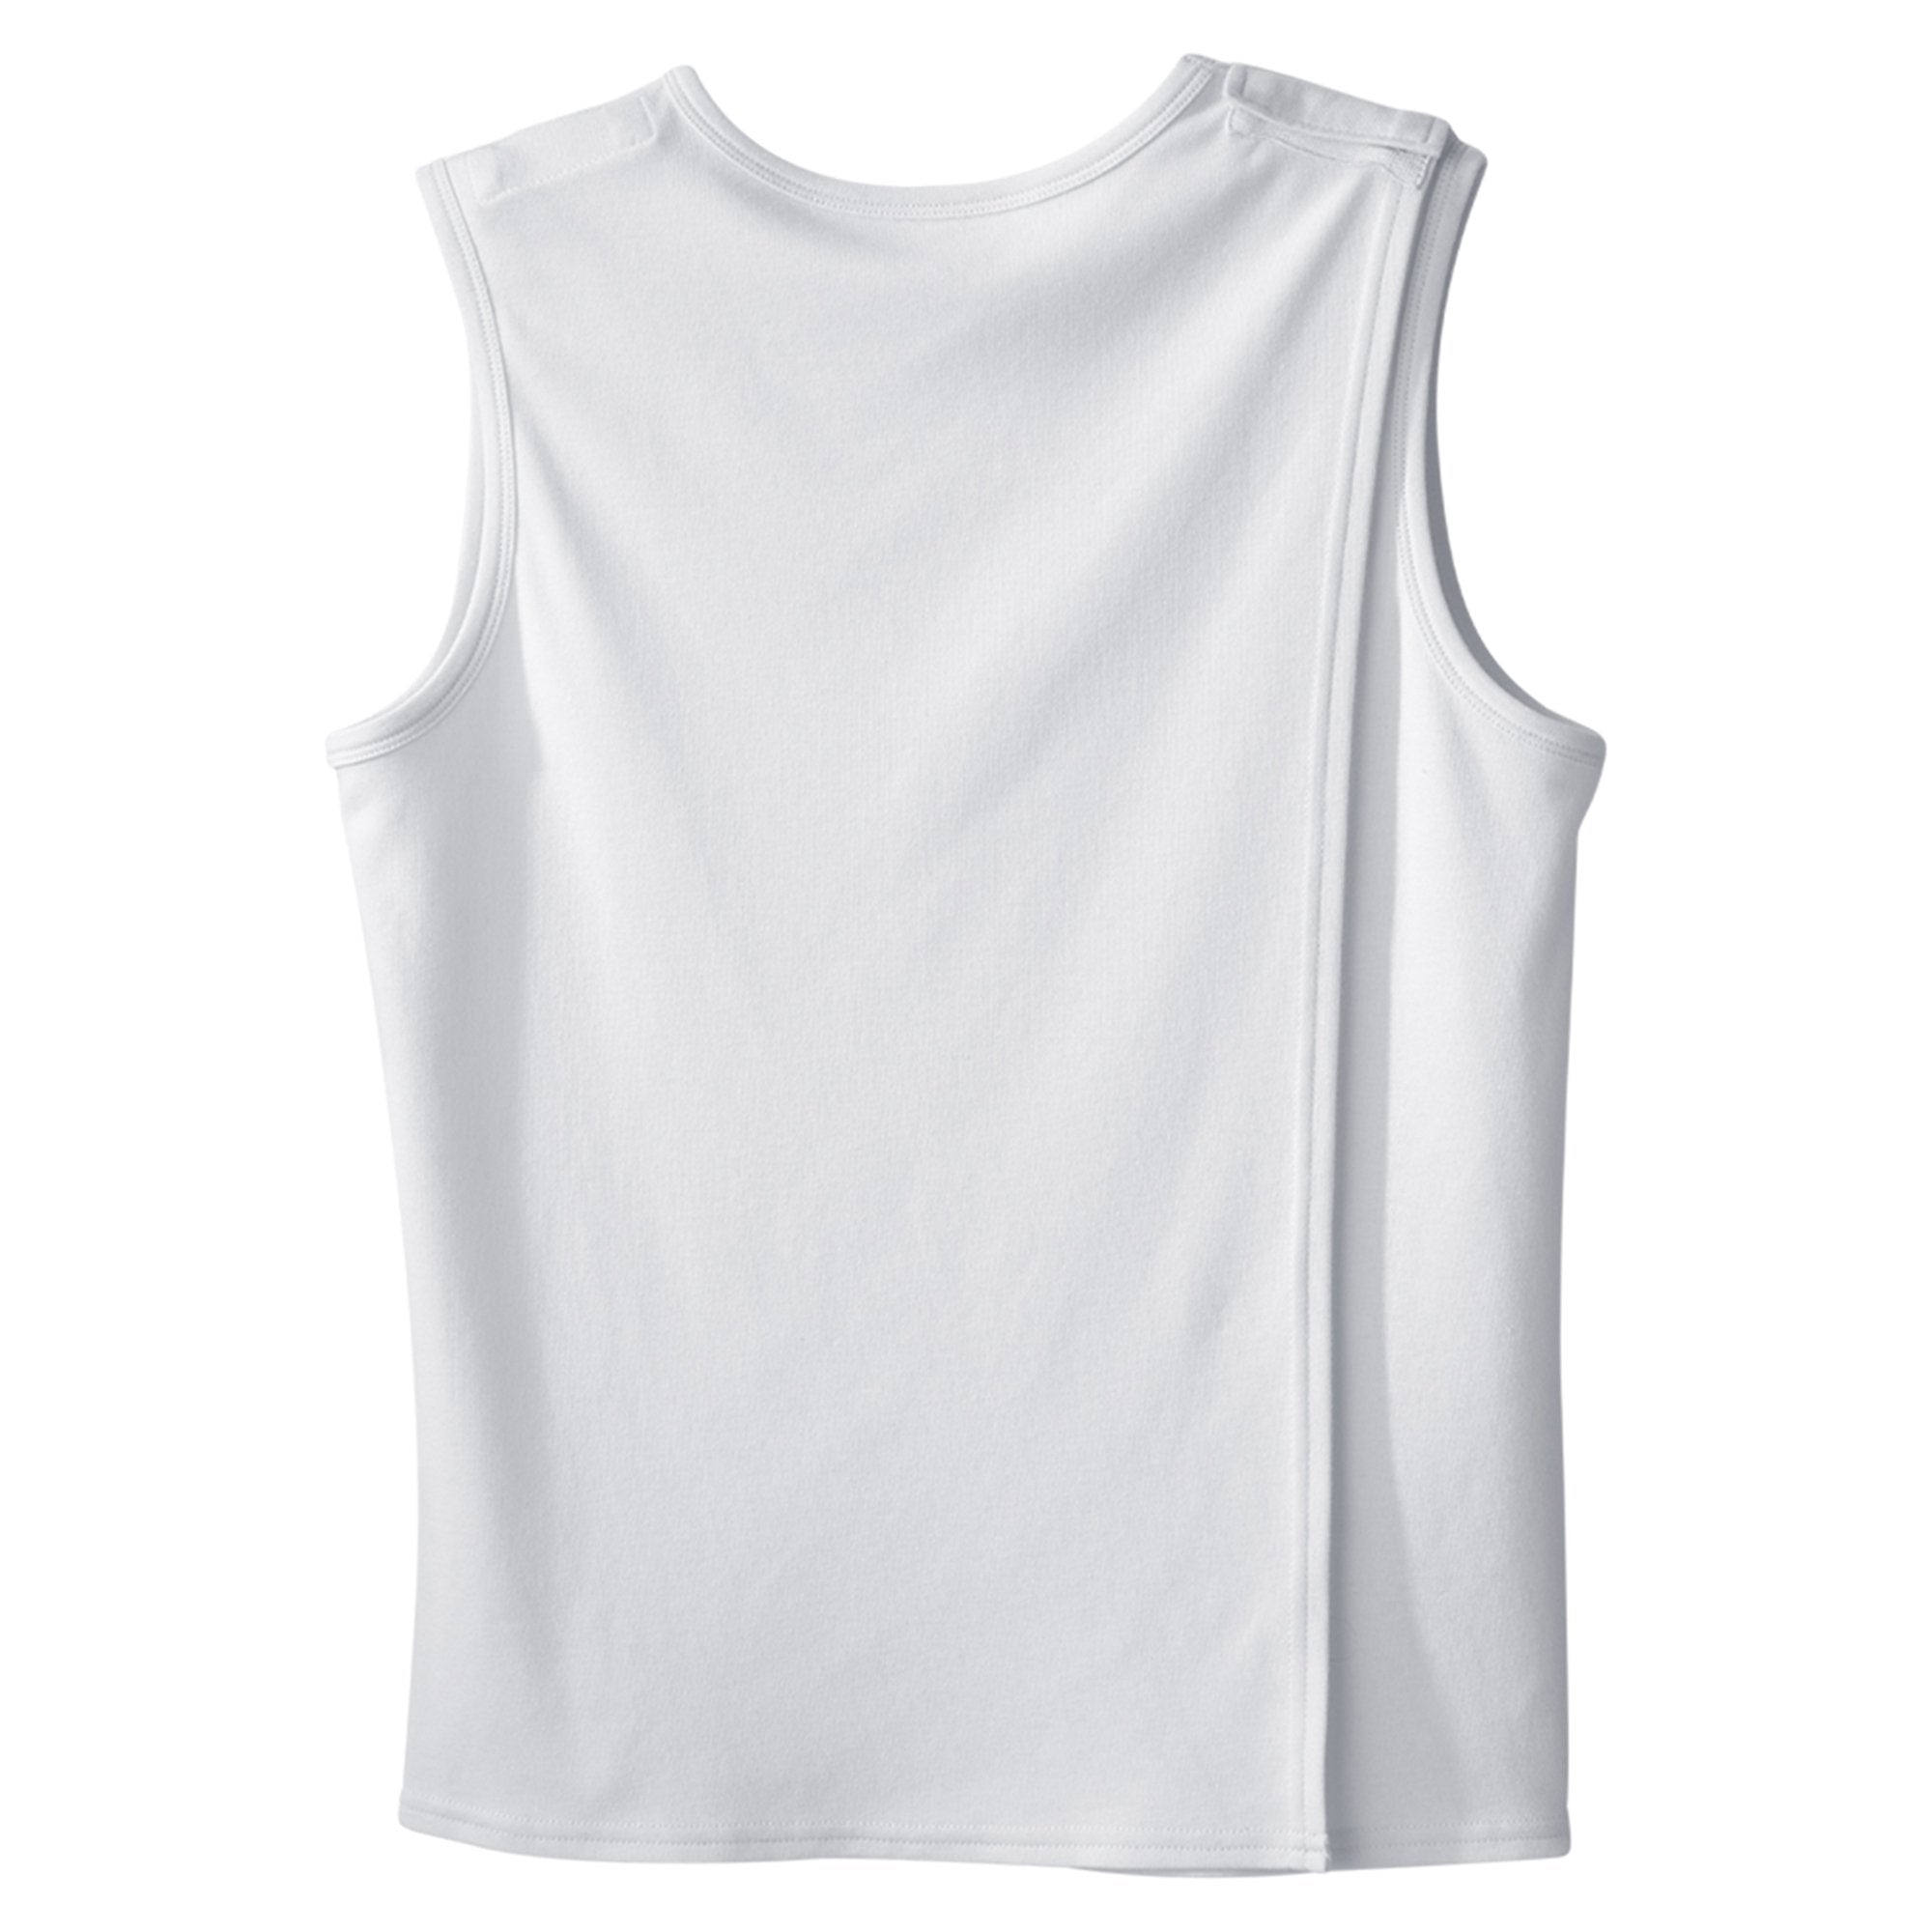 Adaptive Undershirt Silverts Medium White Without Pockets Sleeveless Female